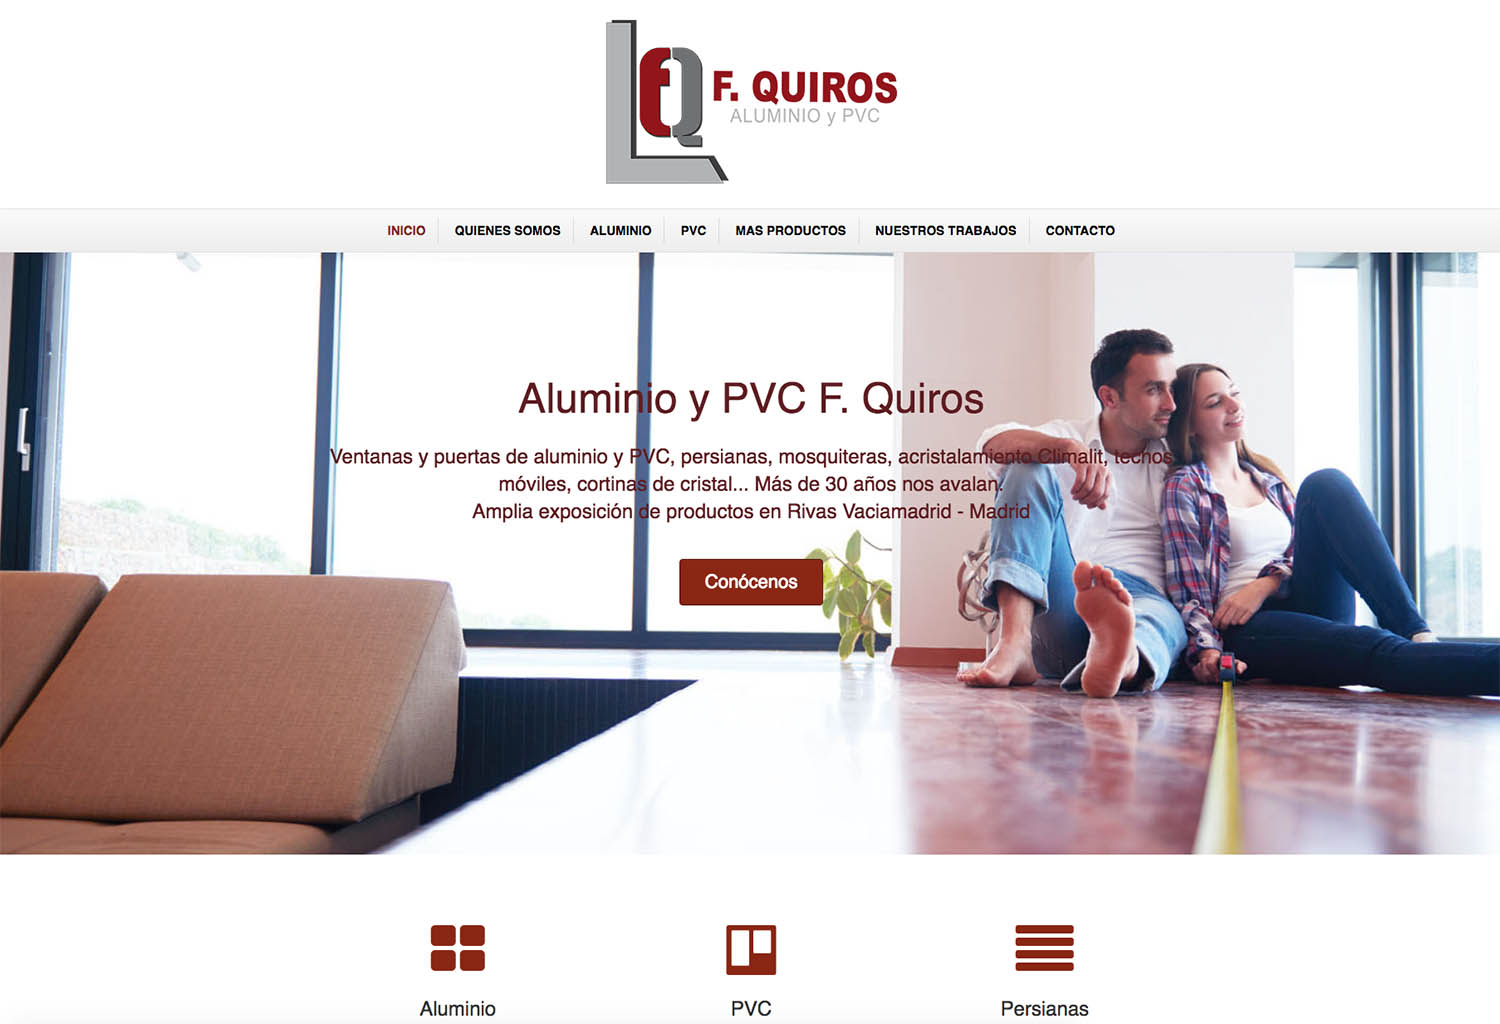 Diseño web para Aluminio y PVC F. Quirós, realizado por Dedalo Digital